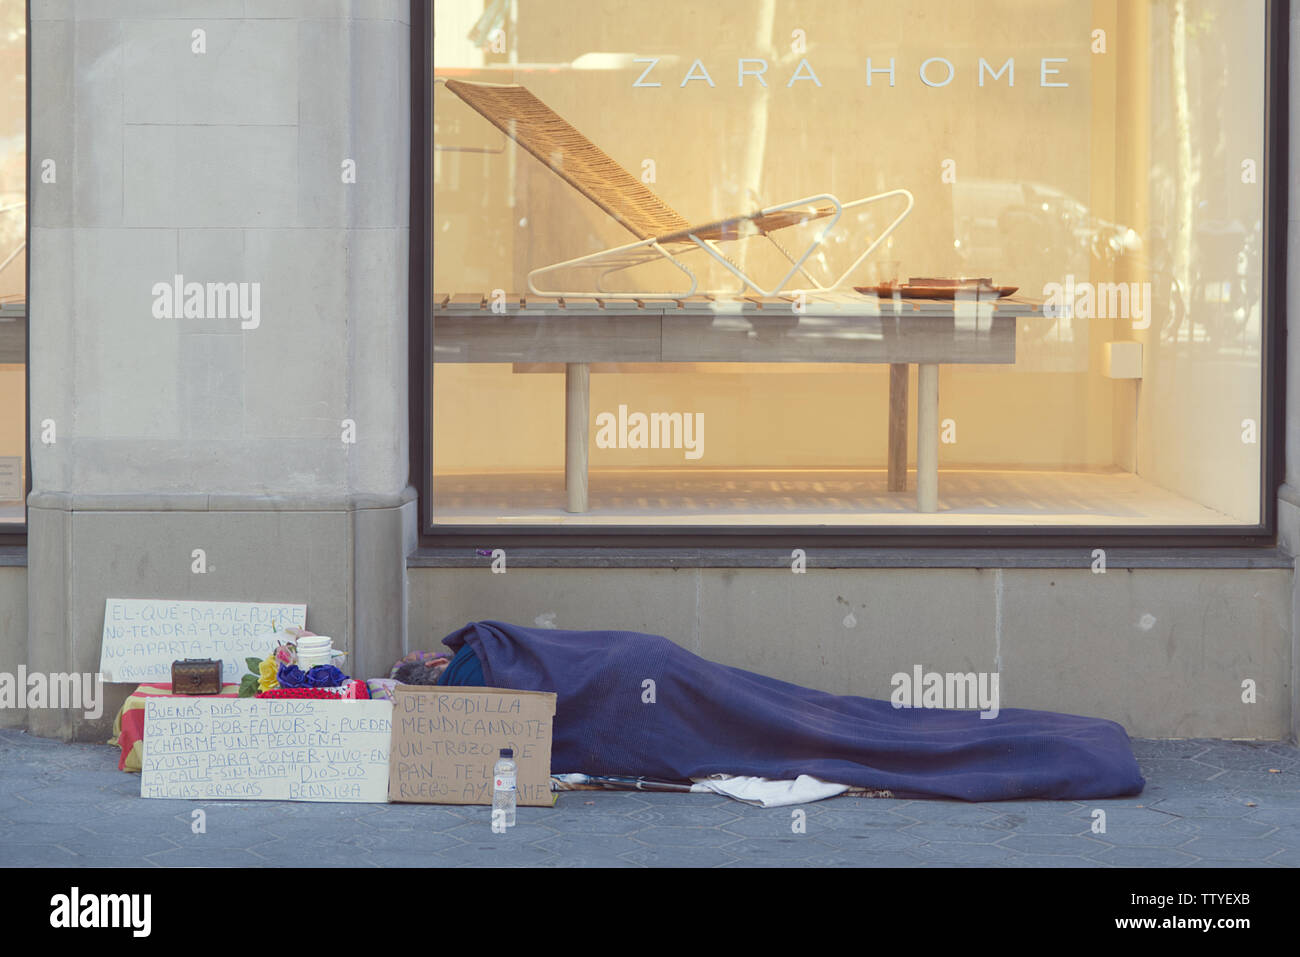 BARCELONA, 18. JUNI 2019: Obdachlose auf der Straße zu schlafen vor einem Zara Home Schaufenster in Paseig de Gracia, Barcelona Stockfoto